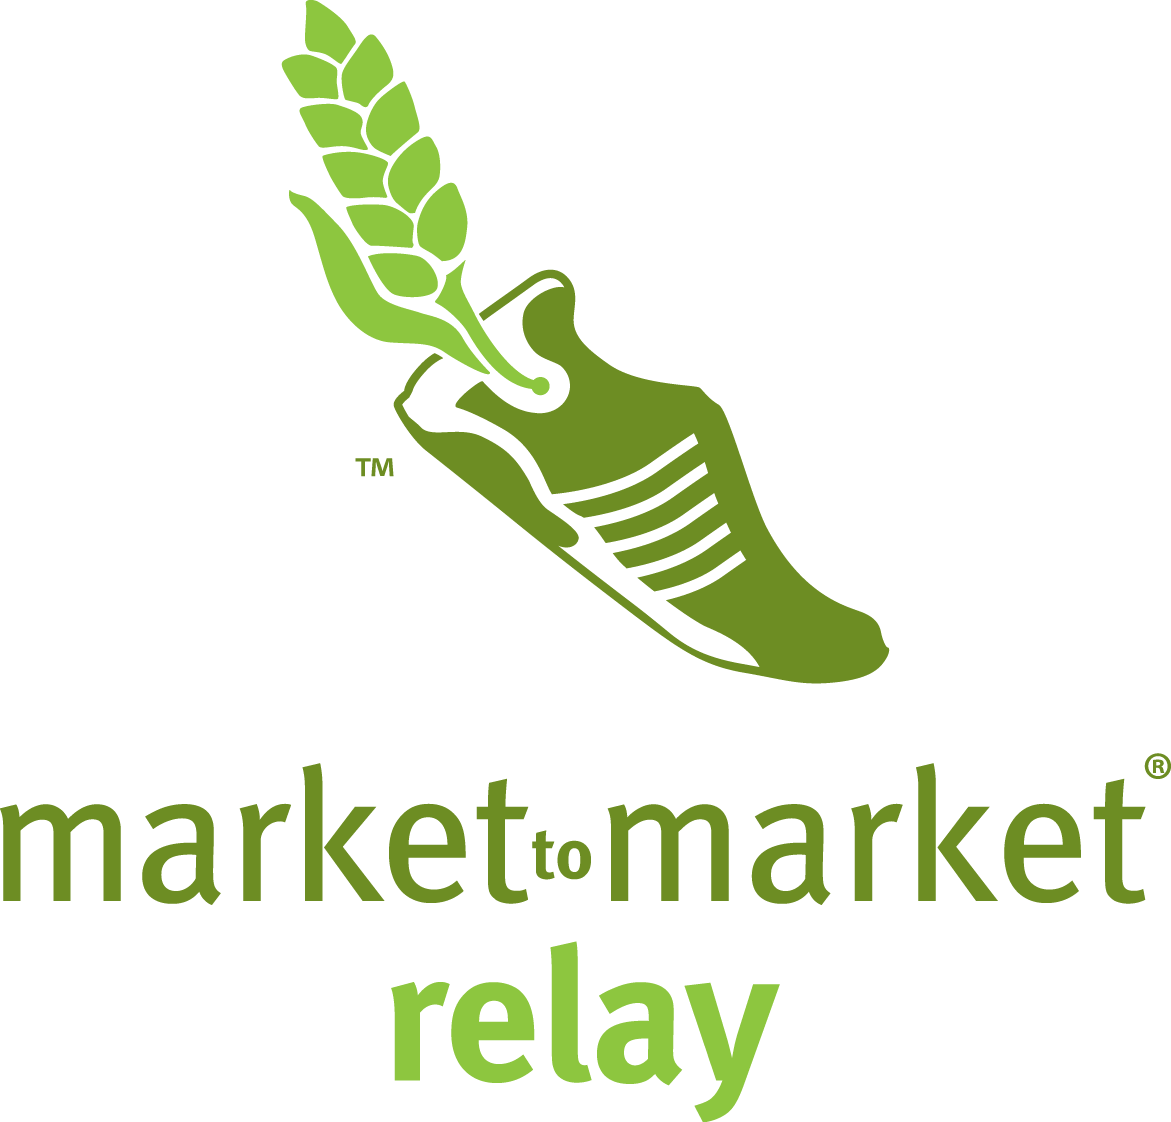 Market to Market Relay Iowa logo on RaceRaves